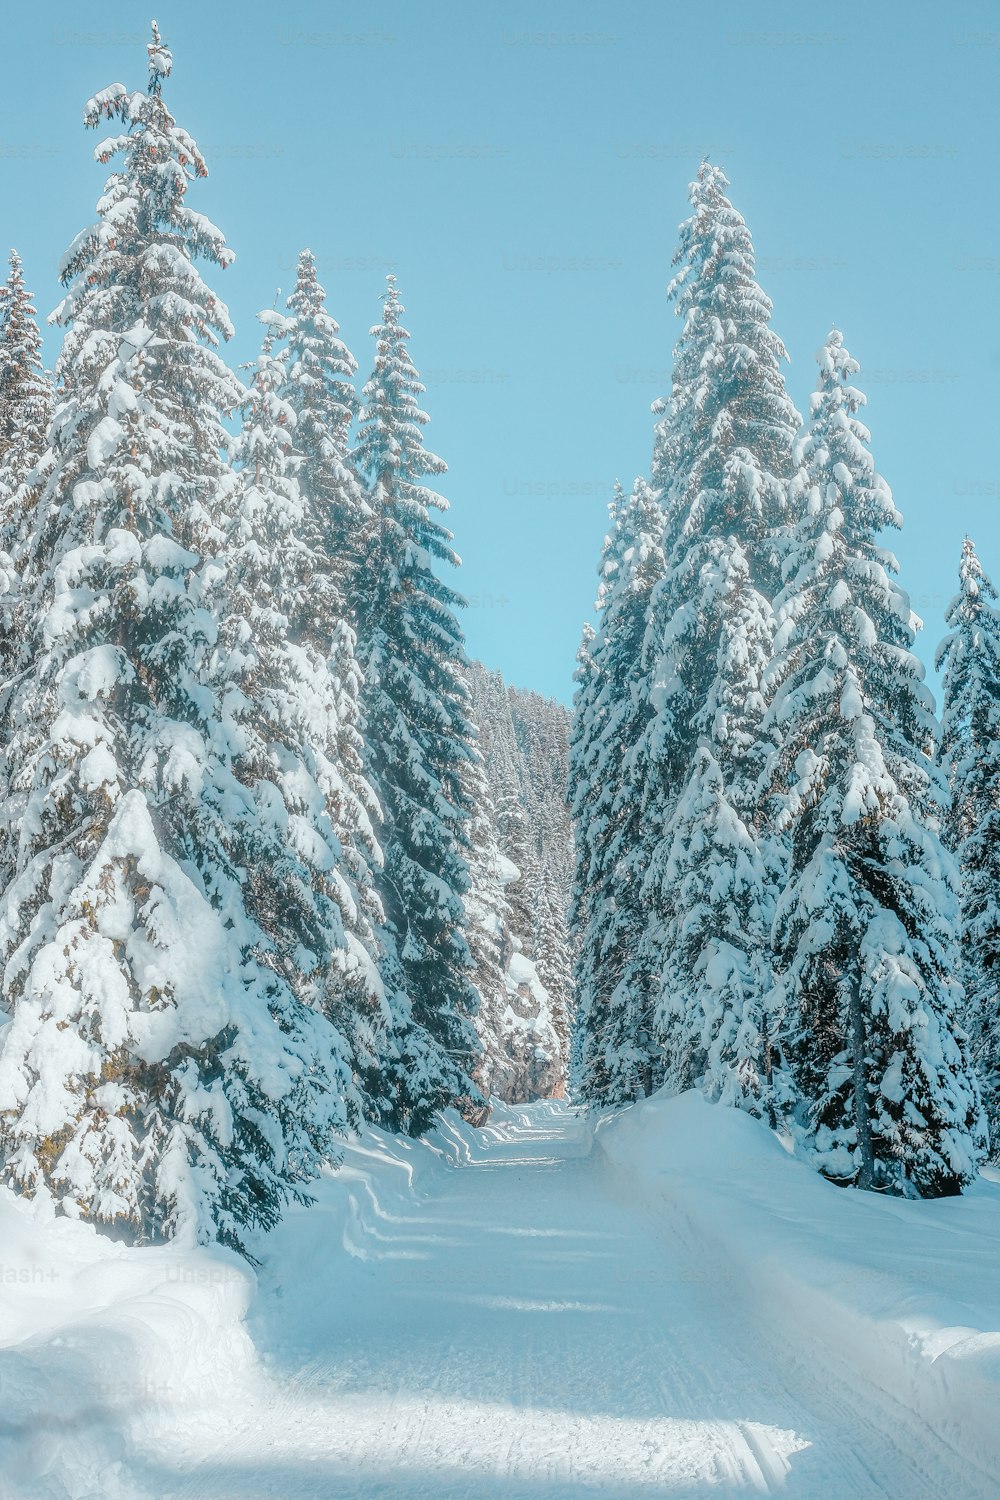 松の木に囲まれた雪道